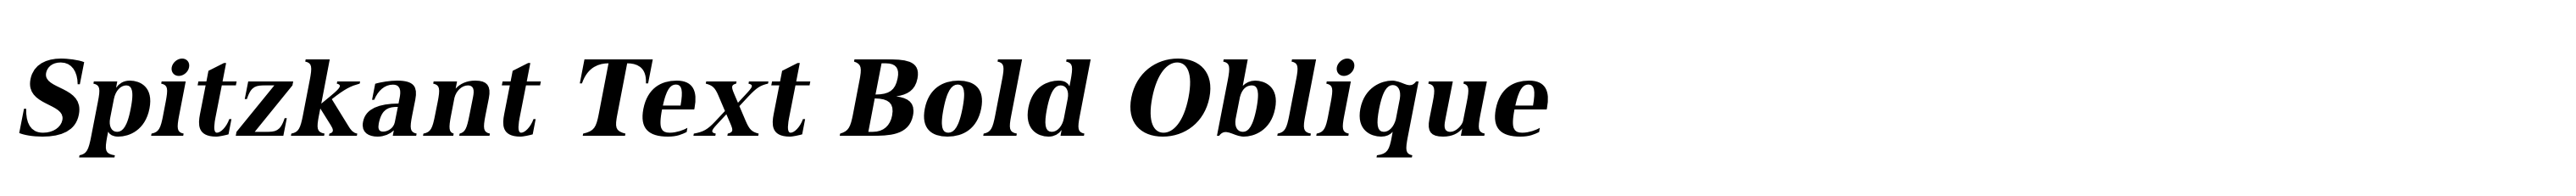 Spitzkant Text Bold Oblique